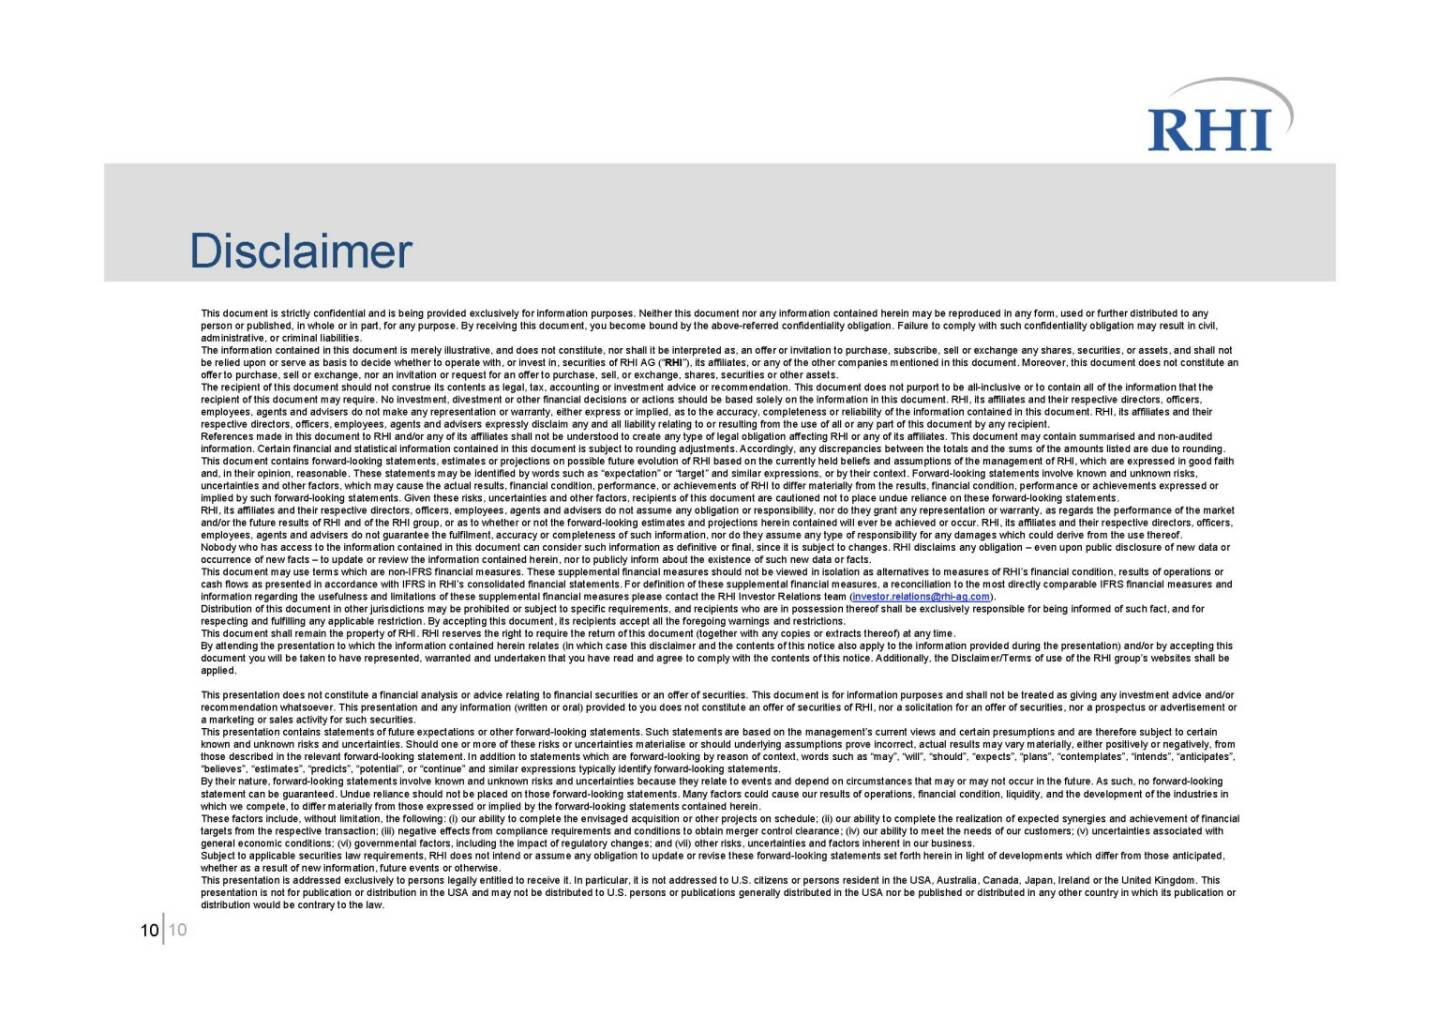 RHI - Disclaimer